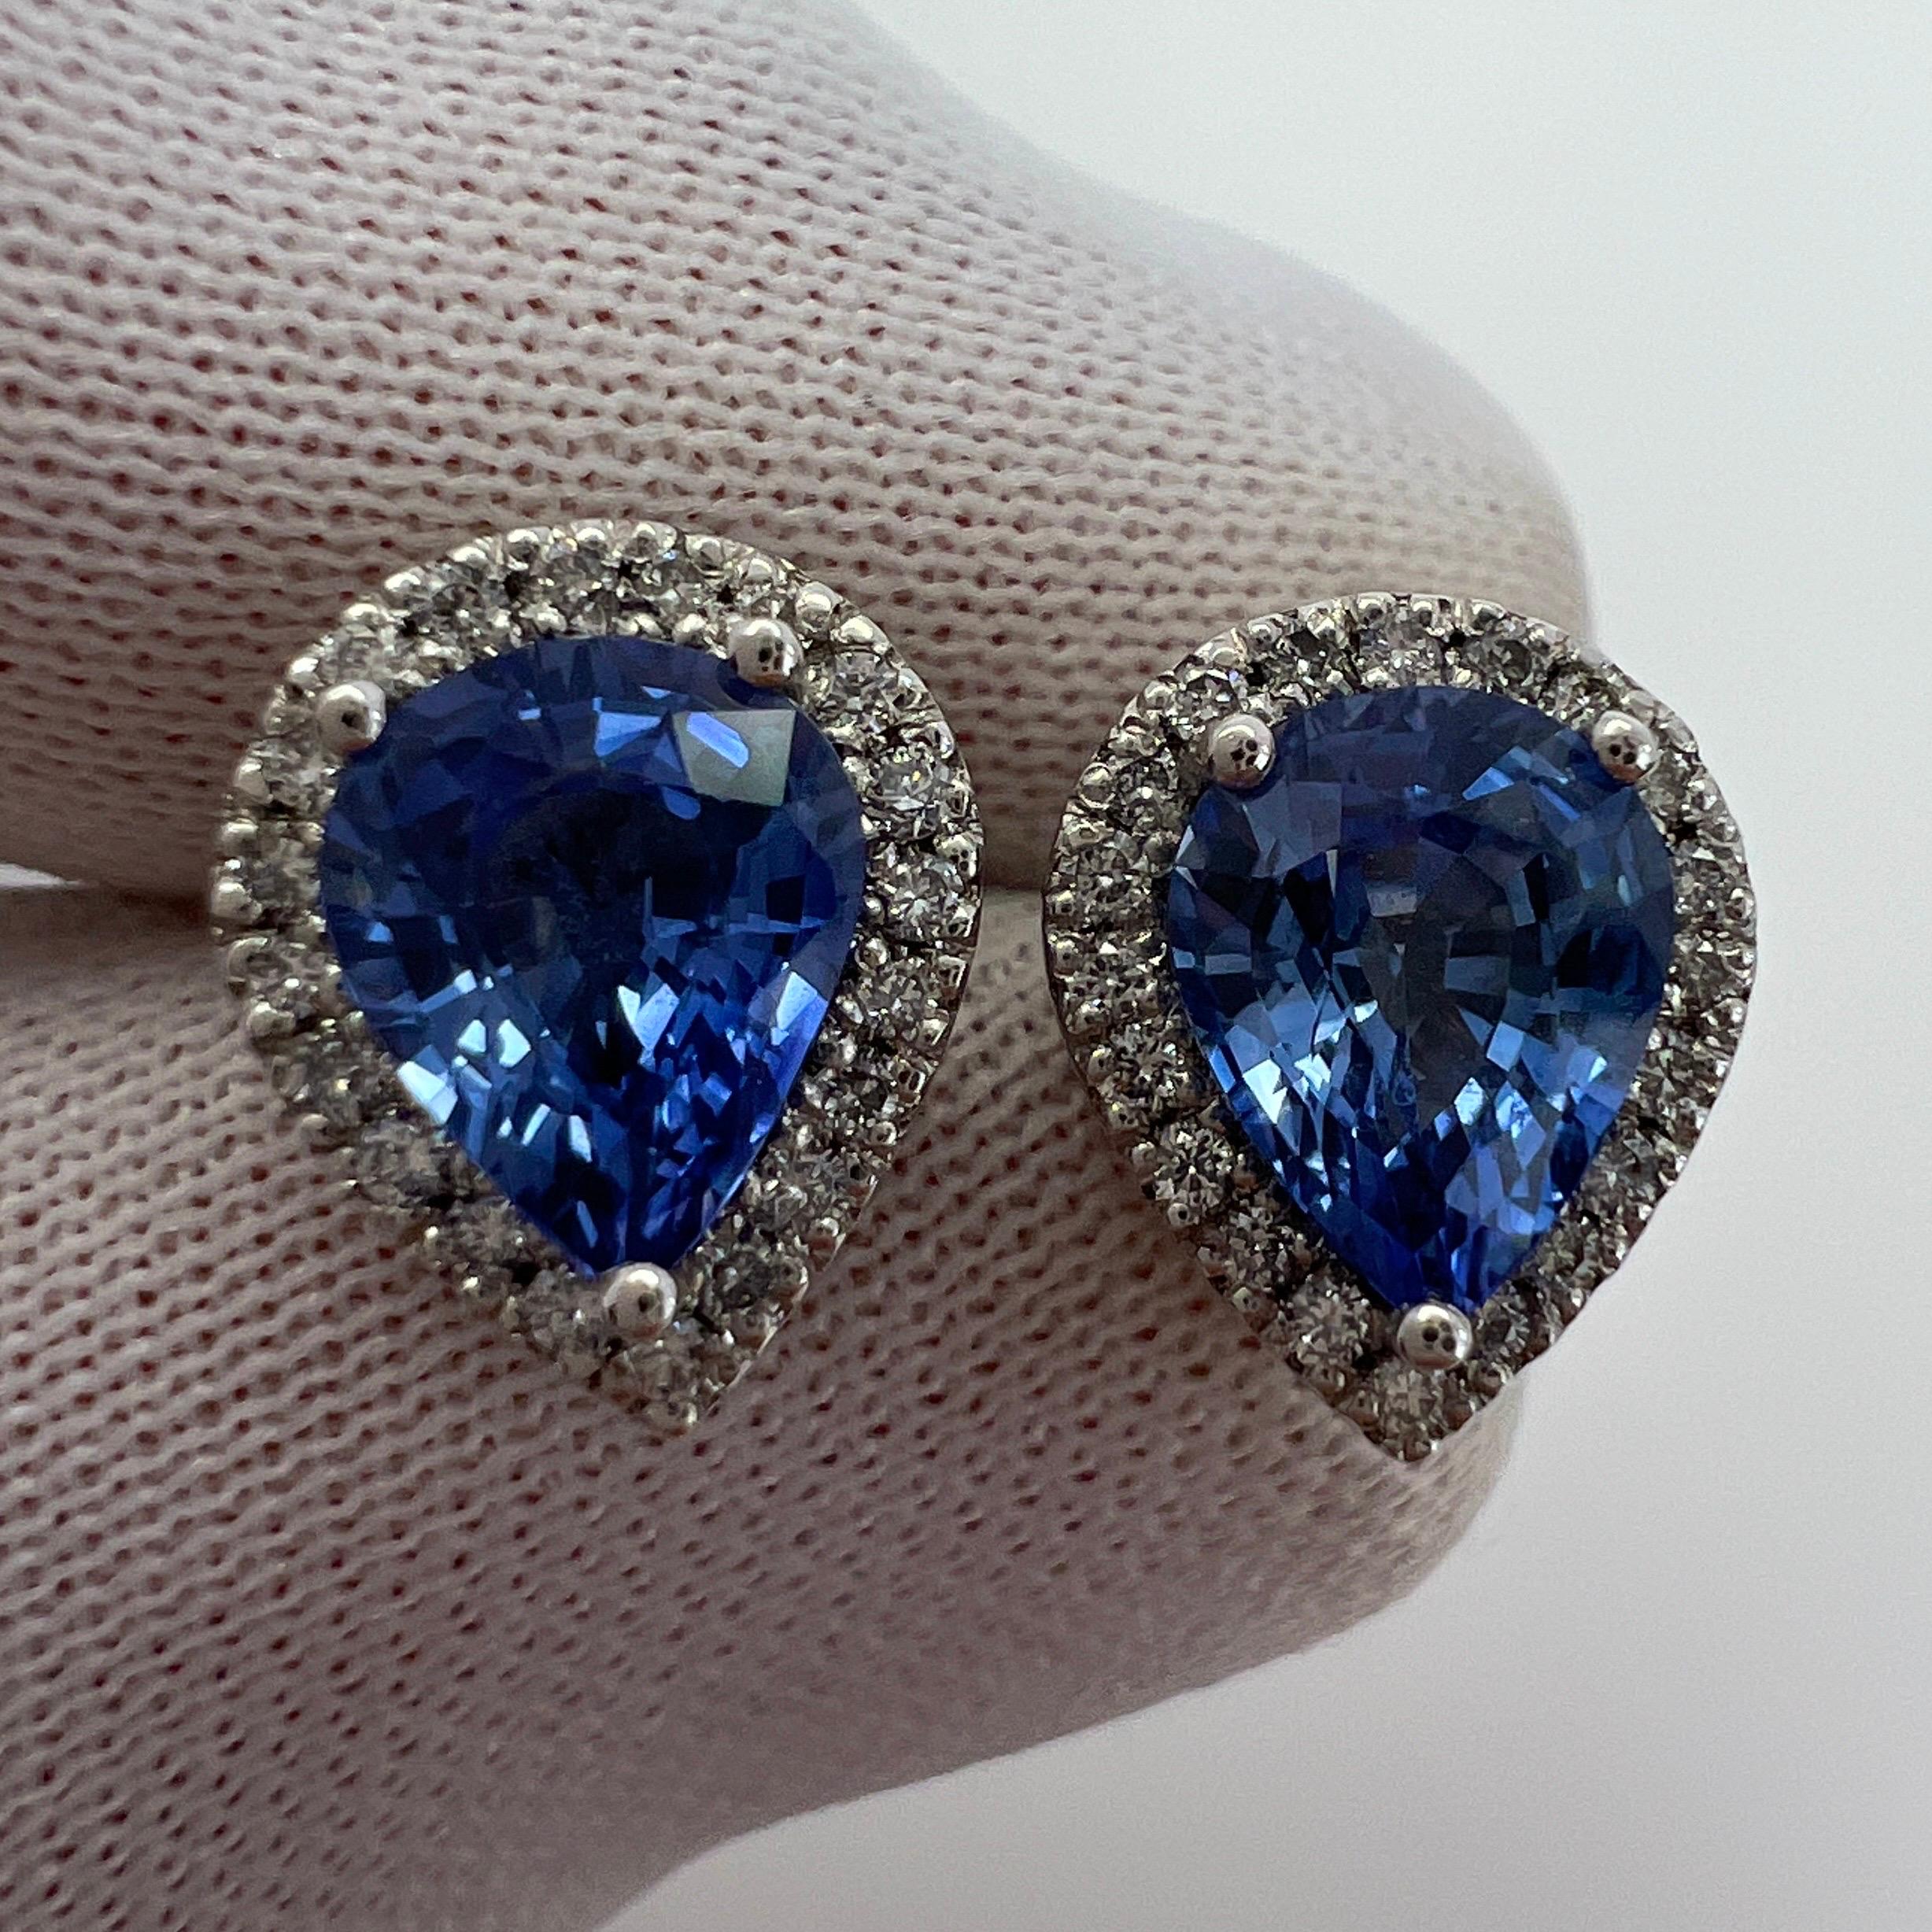 2.70Tcw Top Grade Ceylon Cornflower Blue Sapphire & Diamond 18k White Gold Earring Halo Studs.

Saphirs de Ceylan de 2,50ct d'un bleu vif, d'une excellente clarté et d'une excellente coupe poire en goutte d'eau. Pierres sri-lankaises de qualité